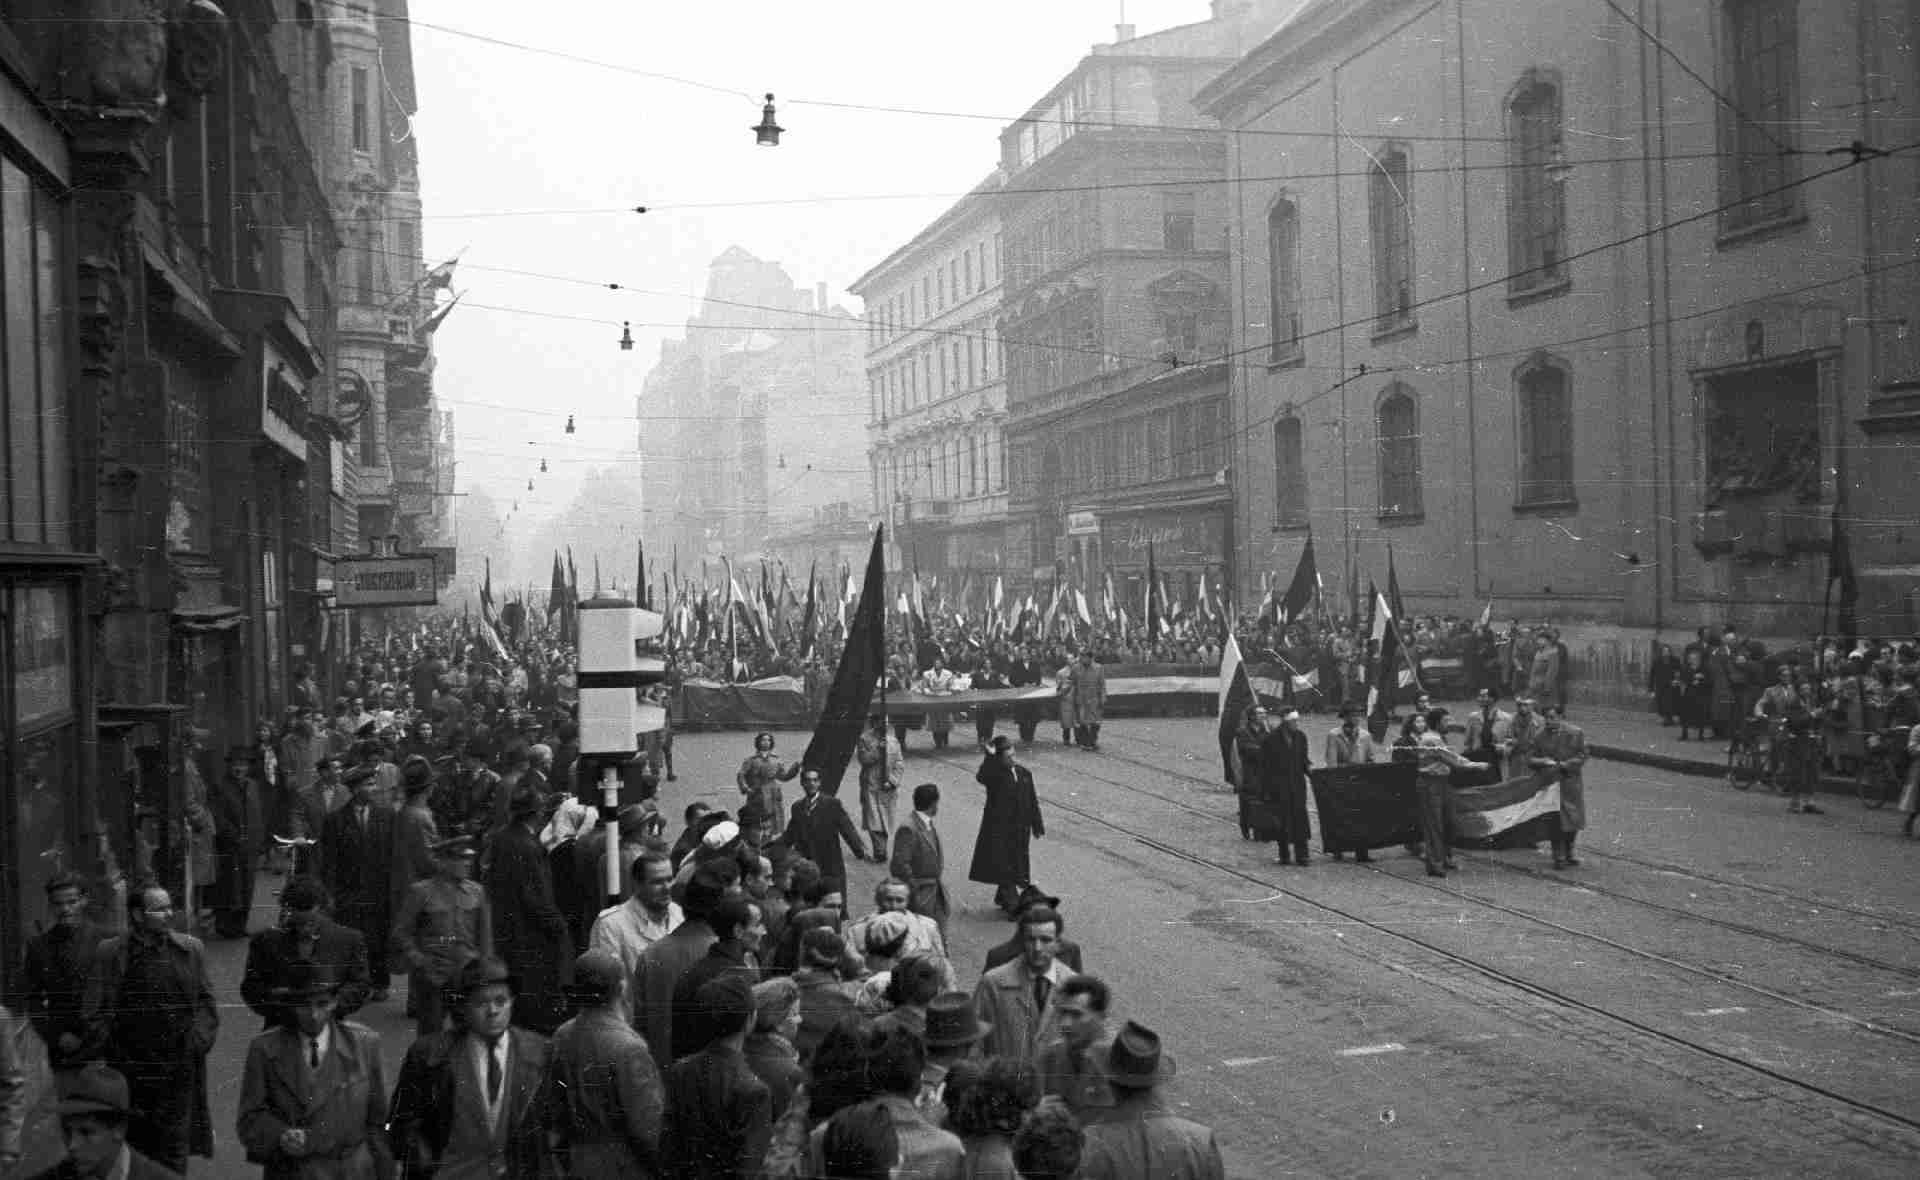 Kossuth Lajos utca a Ferenciek tere felől nézve. 1956.október25-e délután - Fortepan_24652